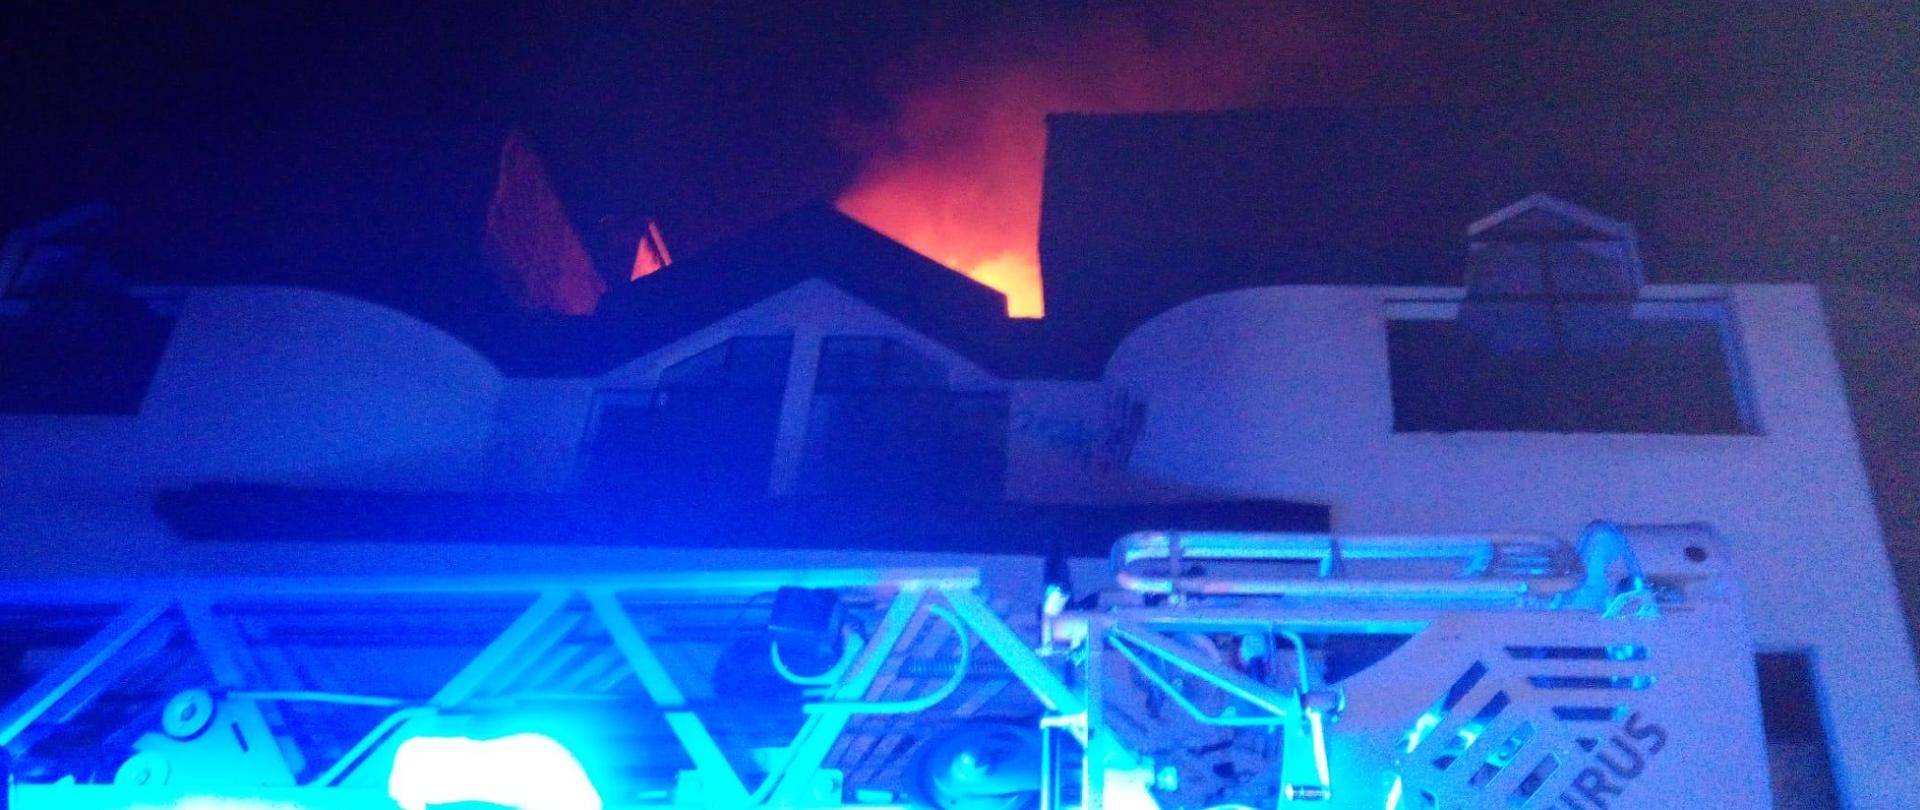 Zdjęcie przedstawia fragment drabiny mechanicznej stojącej na tle opuszczonego budynku gdzie doszło do pożaru. Nad dachem widać łunę bijąca od ognia.